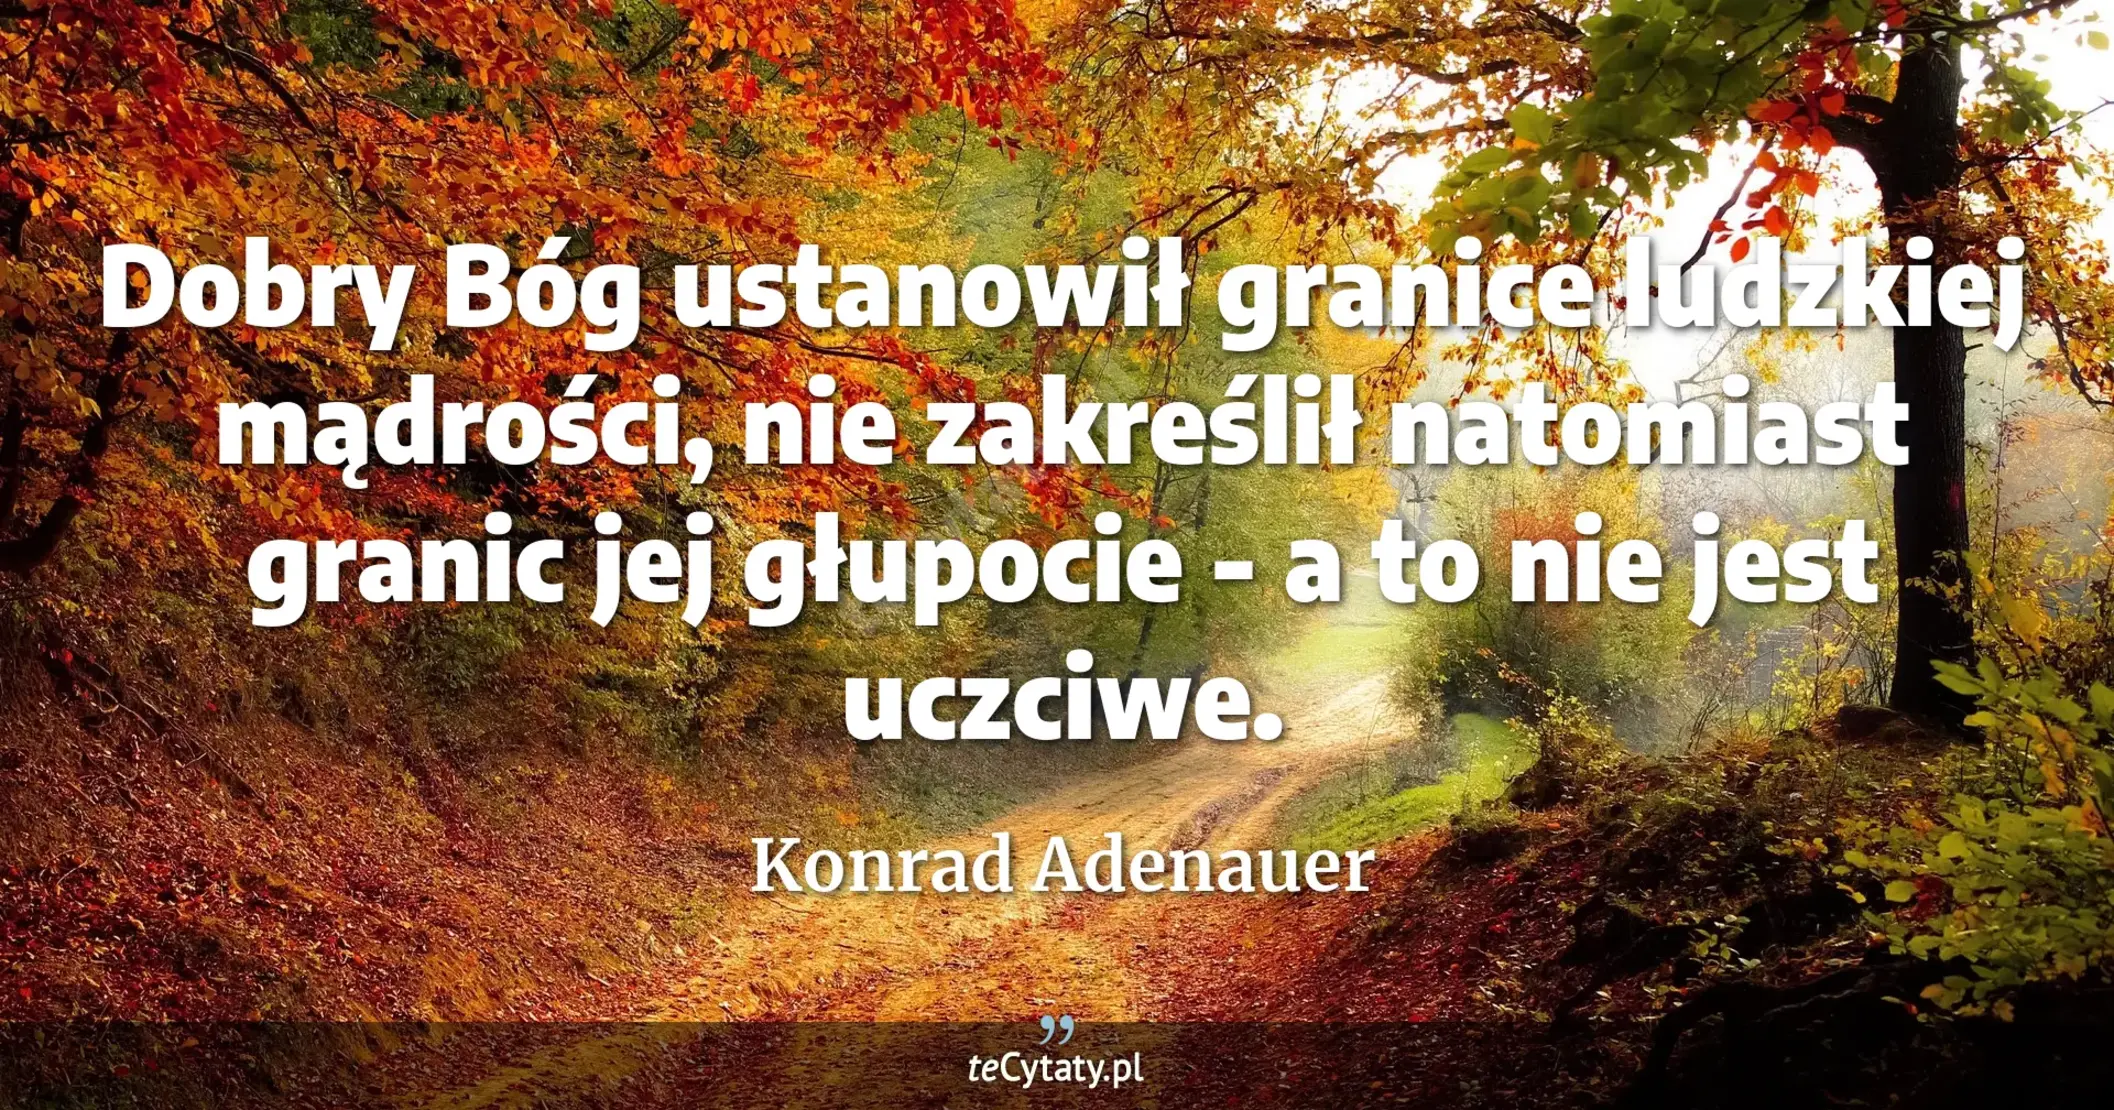 Dobry Bóg ustanowił granice ludzkiej mądrości, nie zakreślił natomiast granic jej głupocie - a to nie jest uczciwe. - Konrad Adenauer